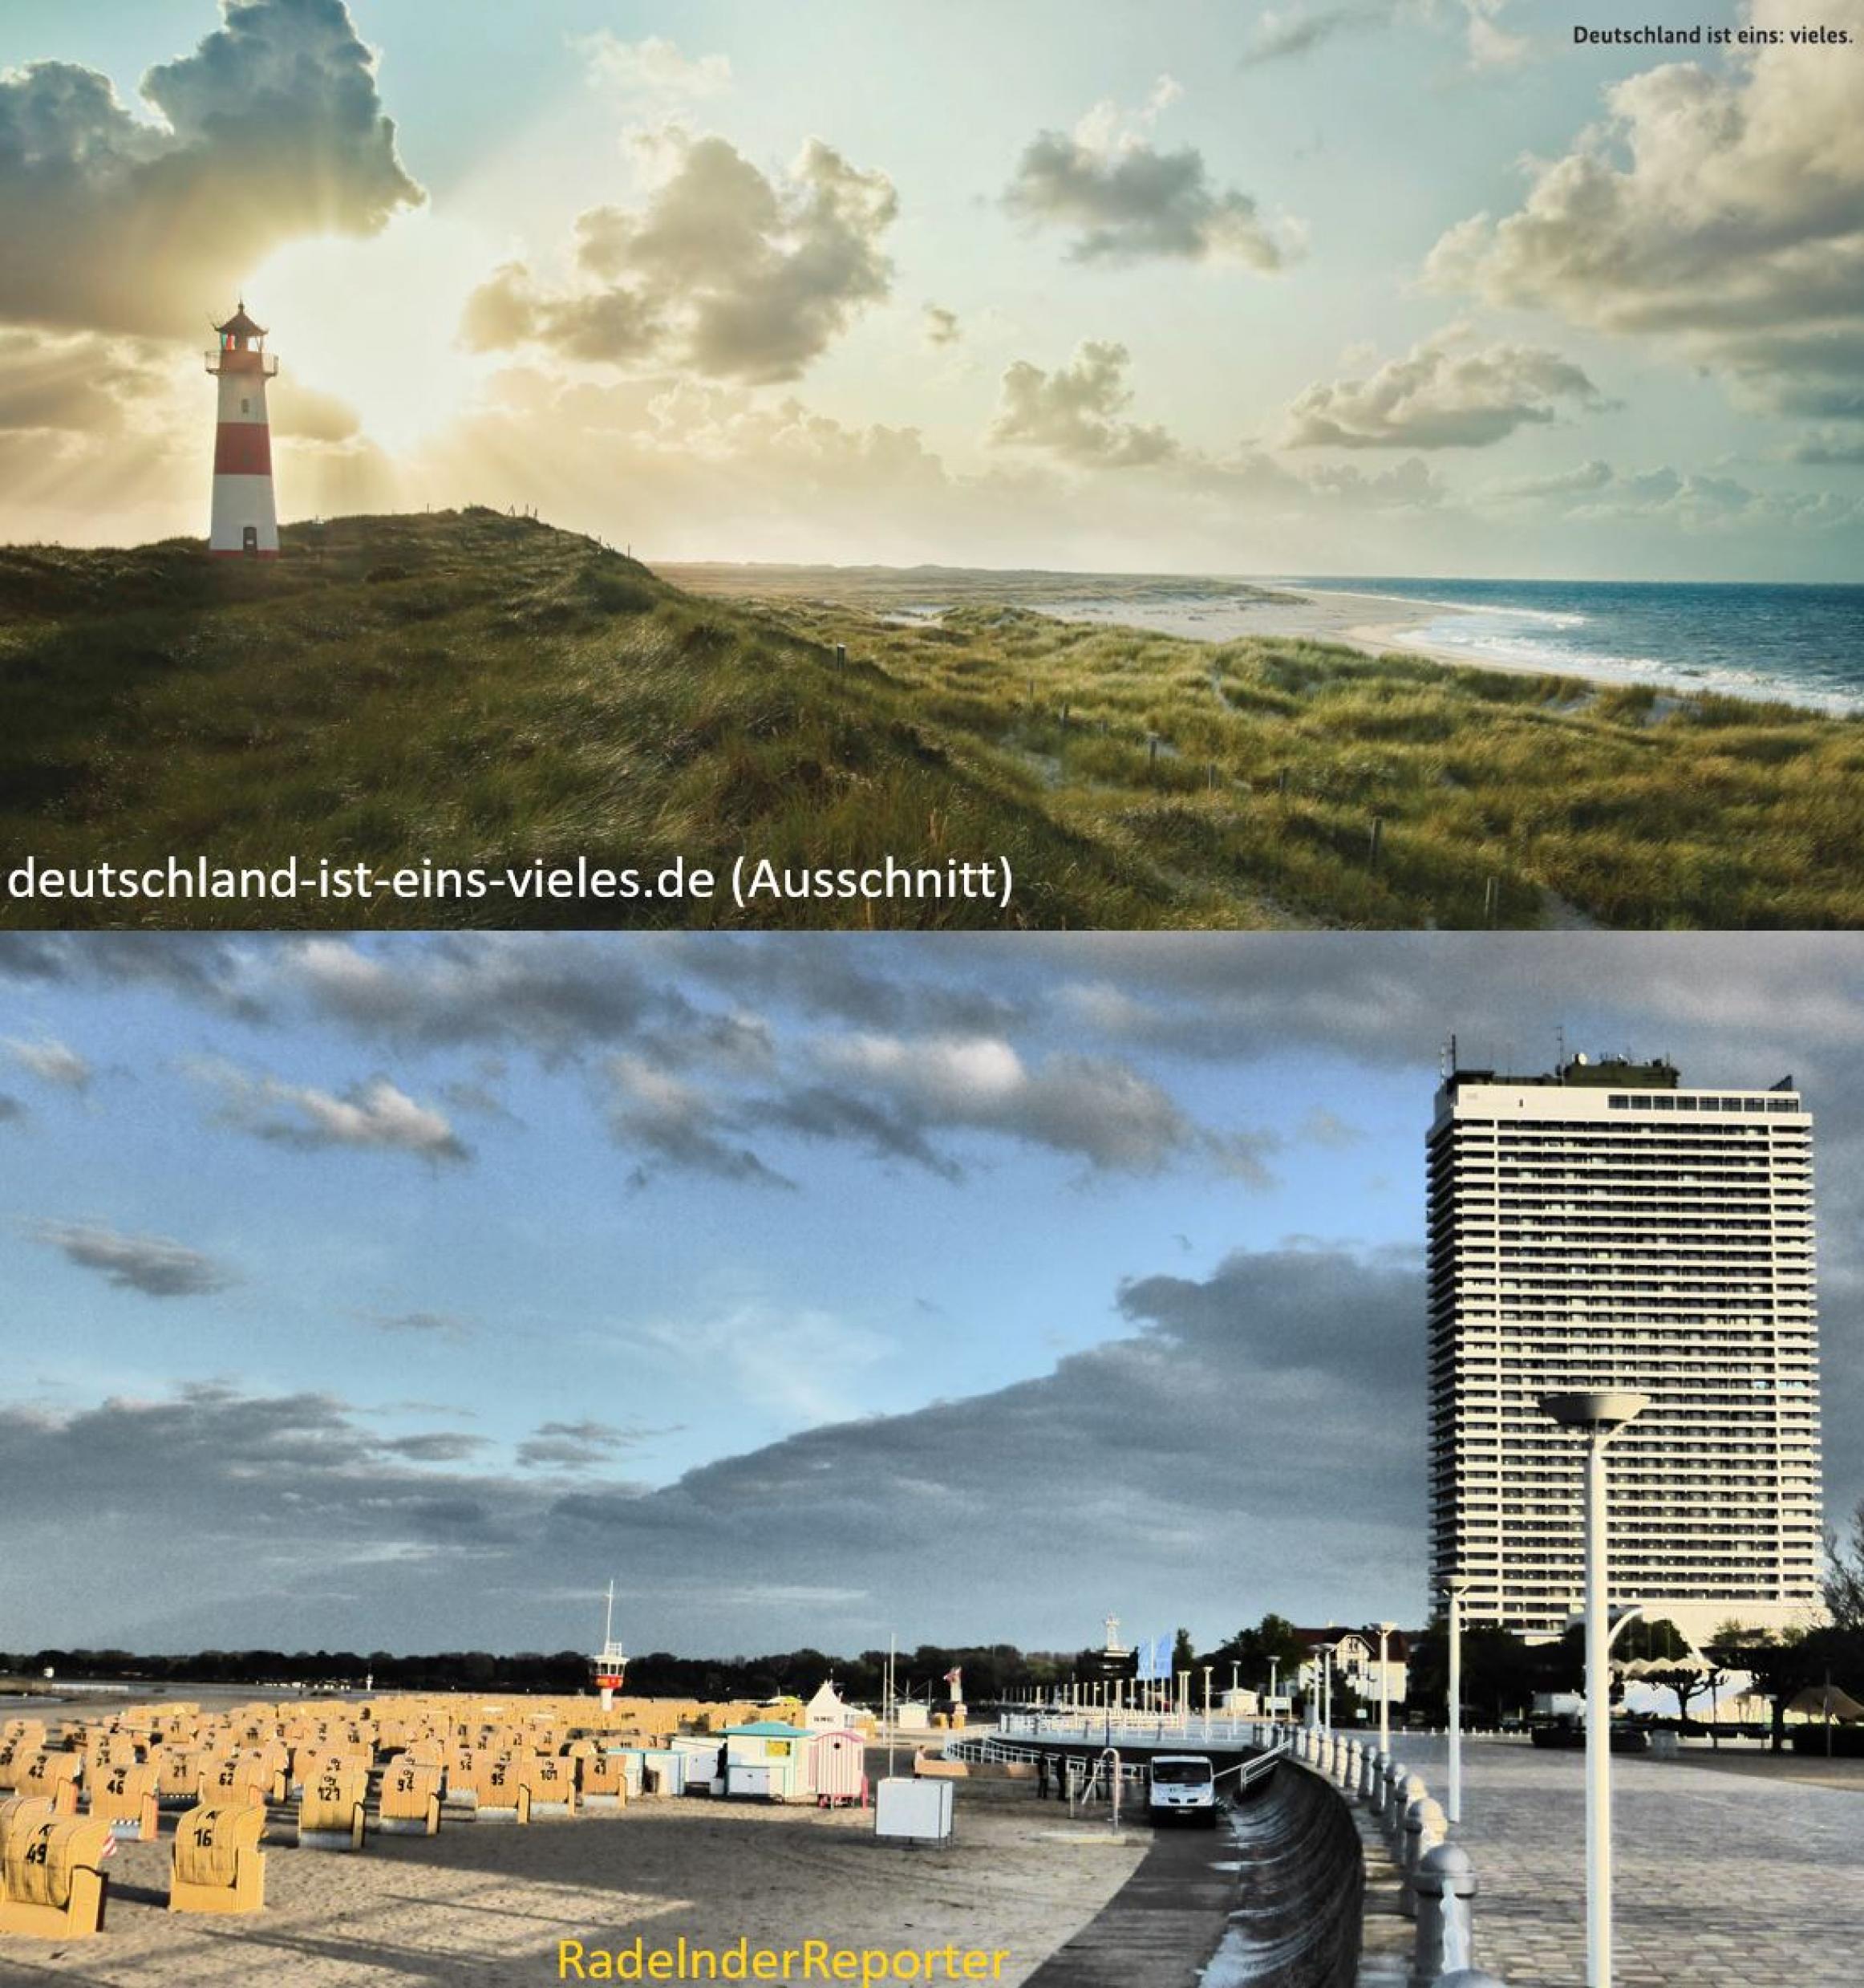 zweigeteiltes Bild: oben das Bild der Regierungskampagne, unten das des RadelndenReporters; beide Bilder zeigen einen deutschen Küstenabschnitt.